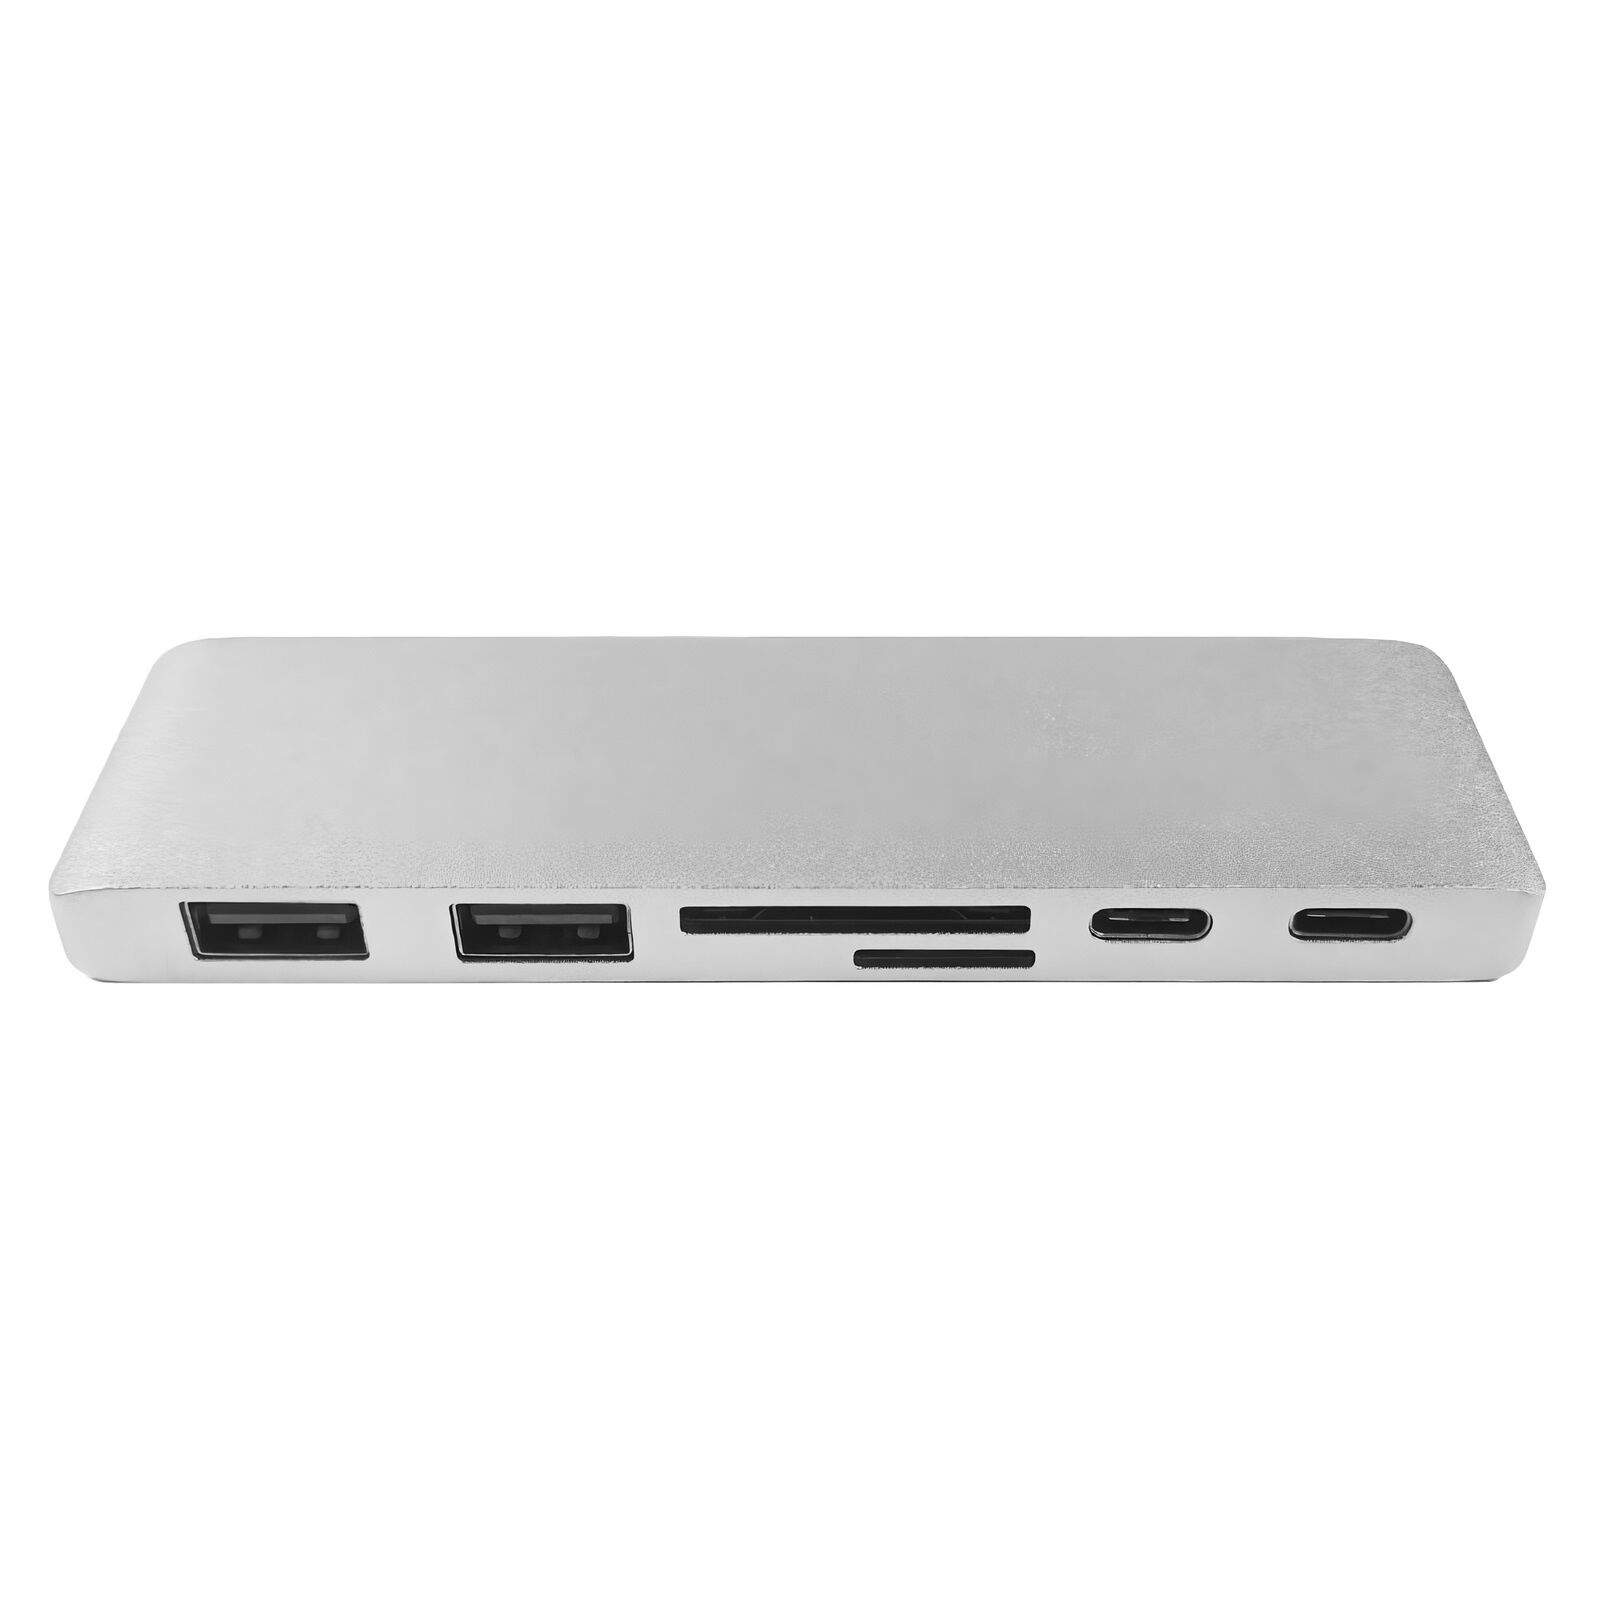 Адаптер Type C на HDMI, USB 3.0*2 + RJ45 + Type C*2 для MacBook серебристый Переходники для ноутбуков